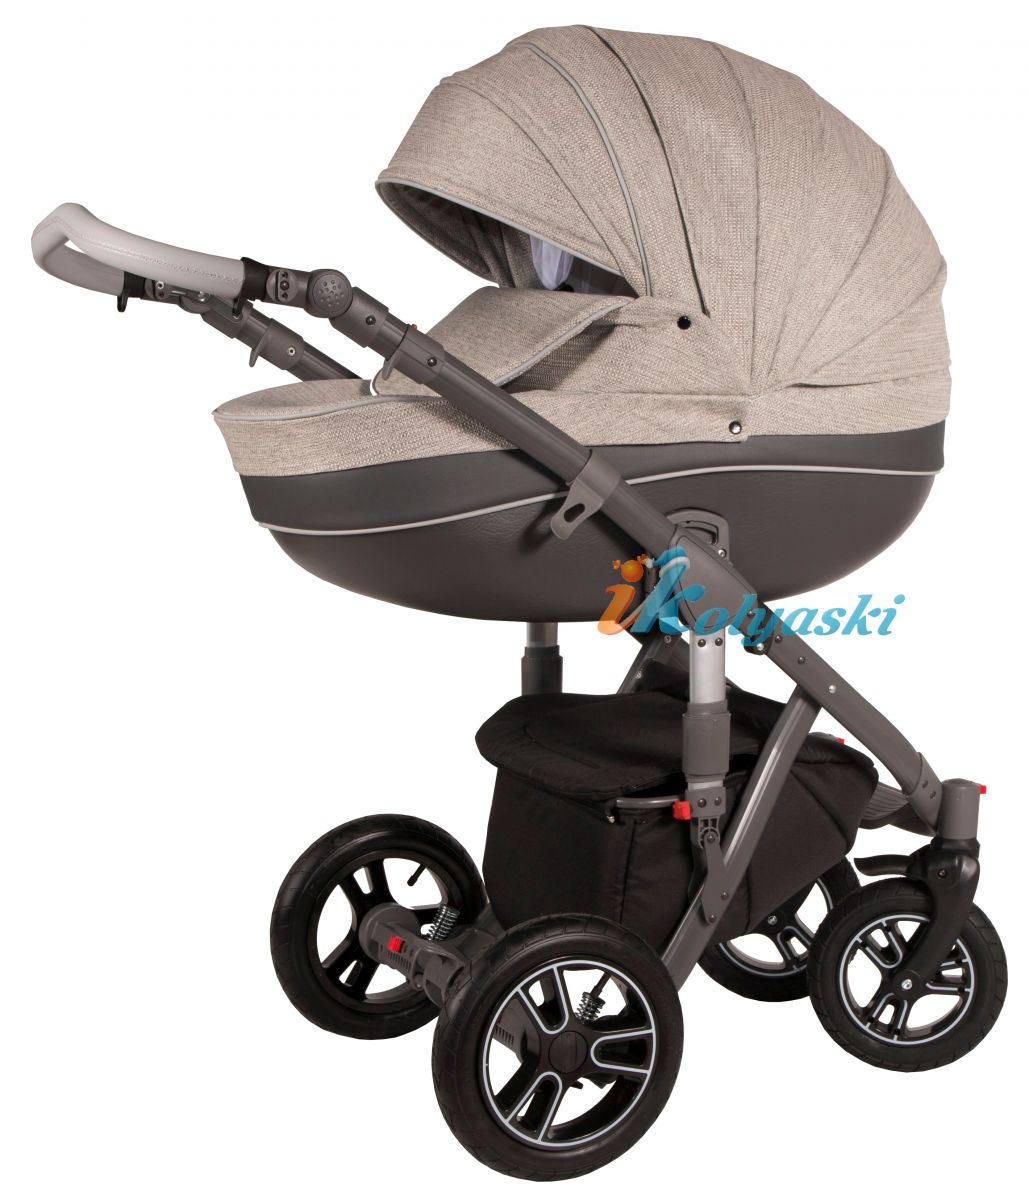 Kajtex Navy Plus Soft 2 в 1 экокожа и Basic Collection ткань, детская коляска для новорожденных, модульная на поворотных колесах, 2 в 1 Roan Bass Soft  - Роан Басс шасси Софт, обшивка люльки экокожа или ткань. Новинка 2018.